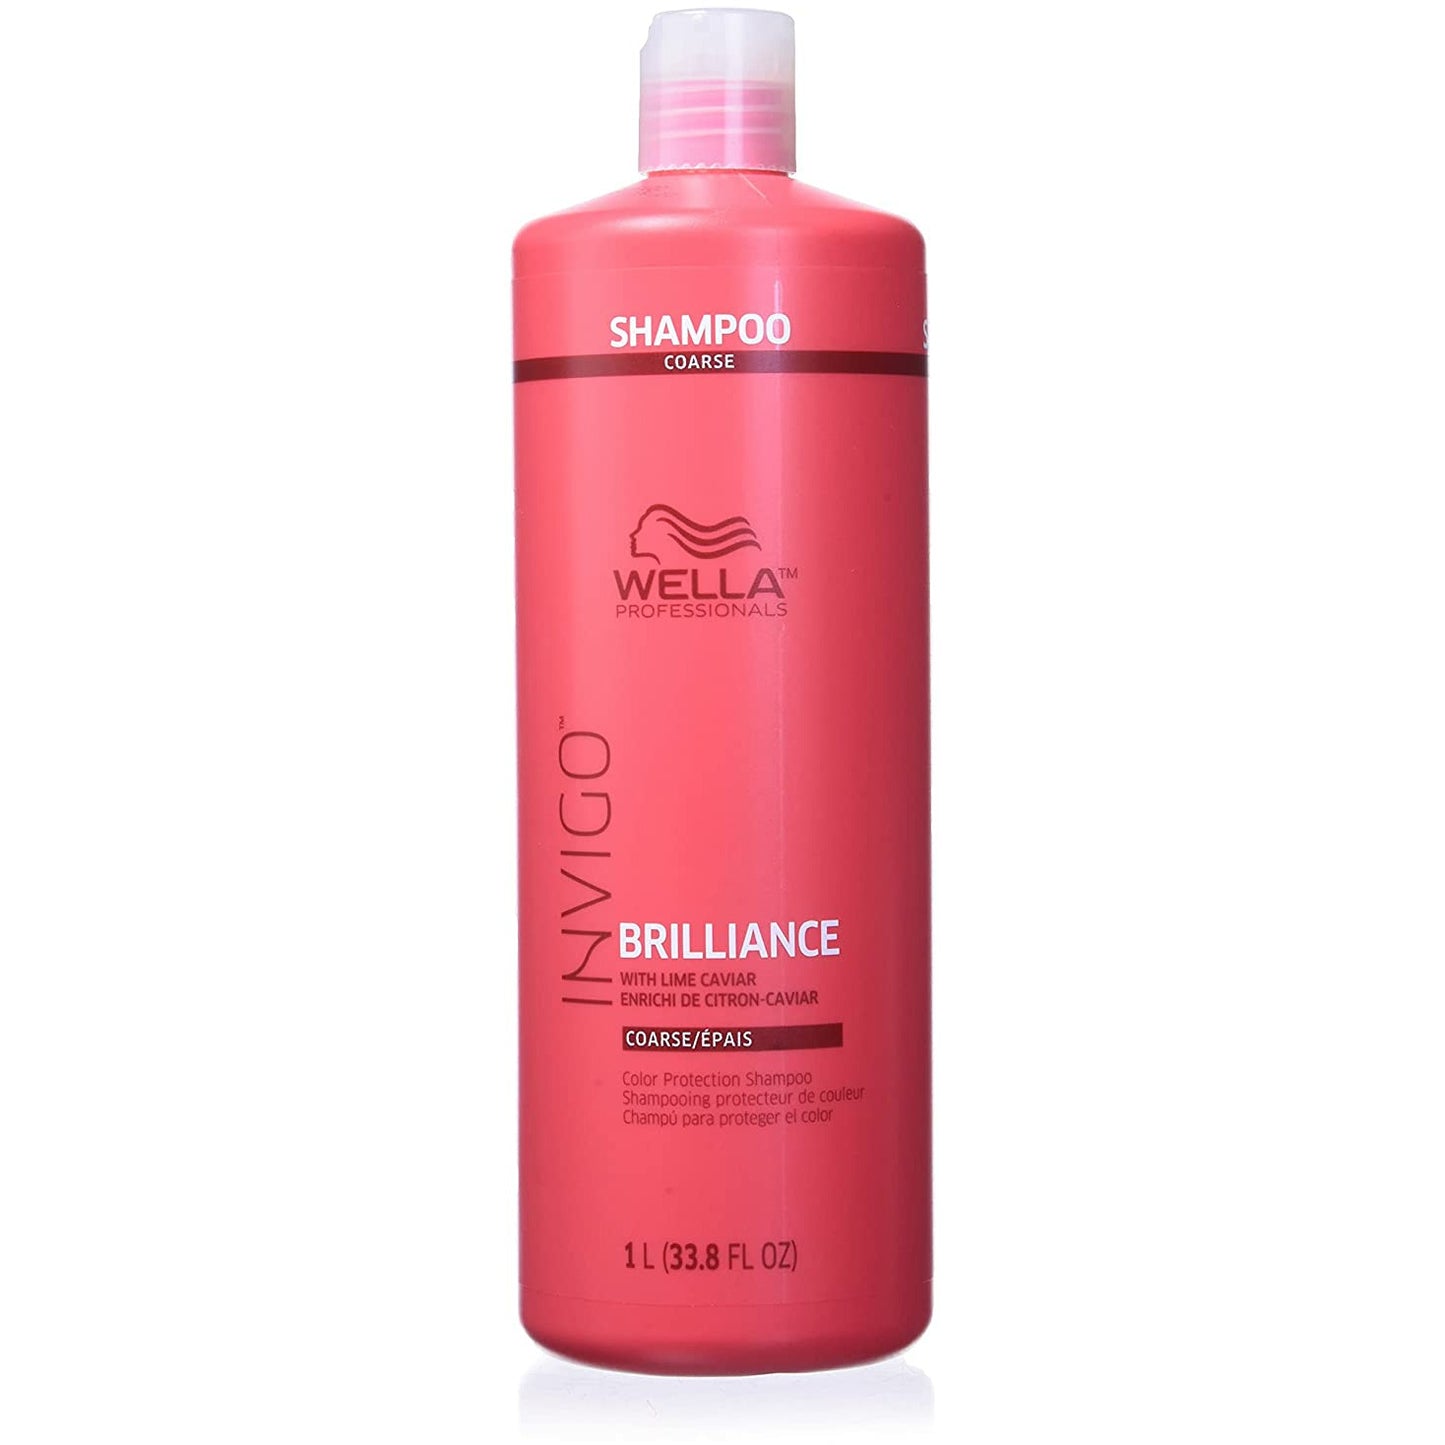 Wella Invigo Brilliance Shampoo for Coarse Hair, 33.8 oz.